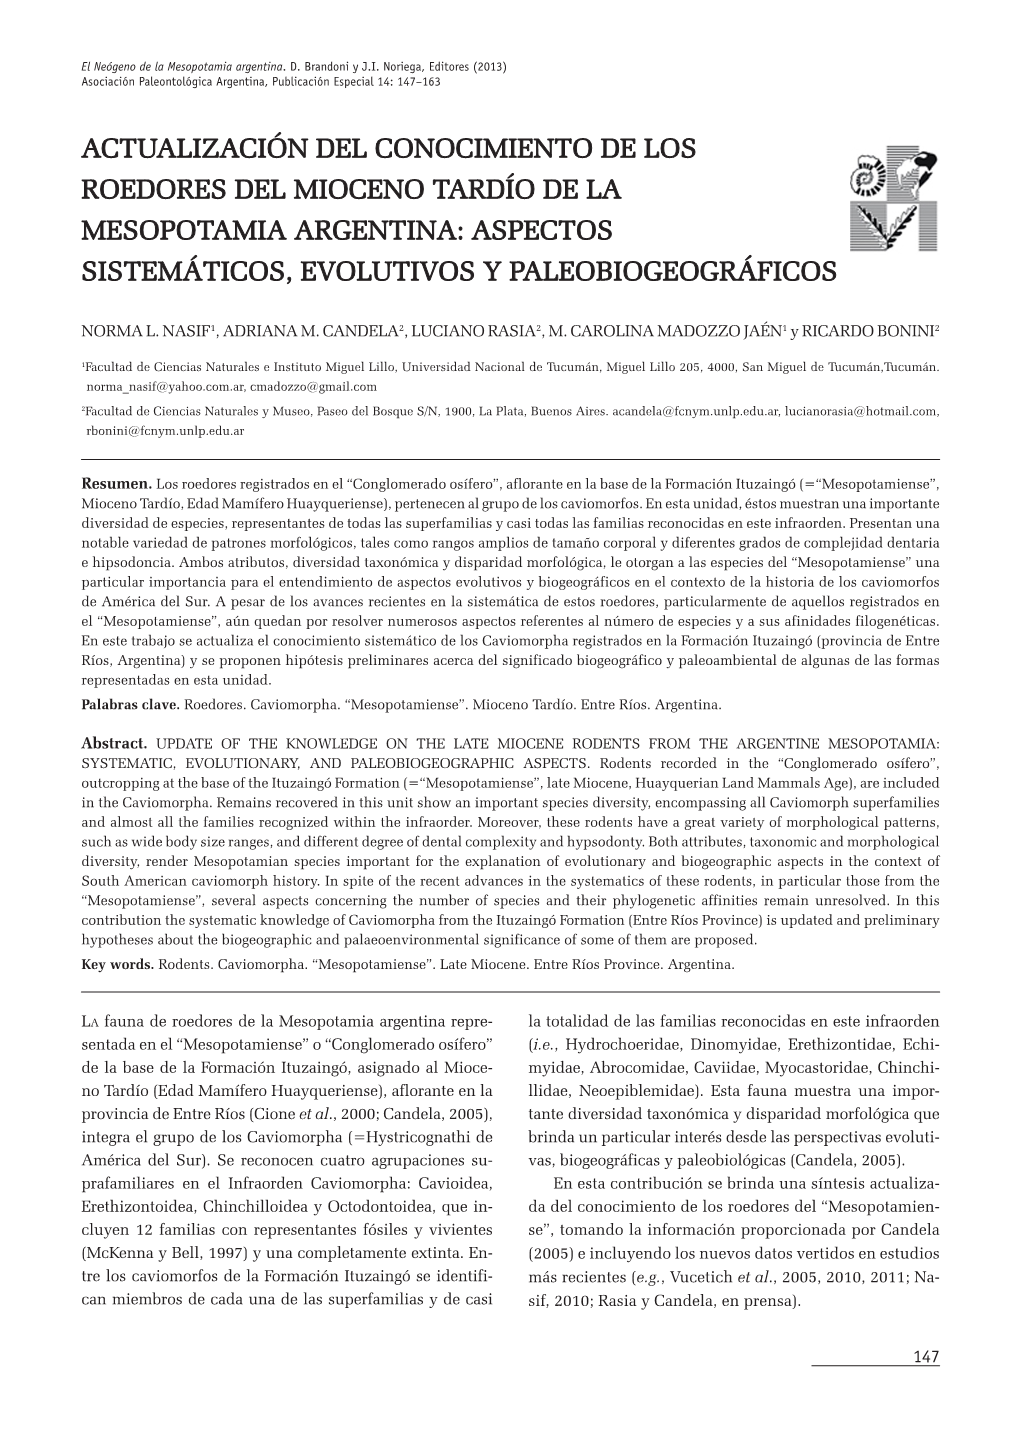 Actualización Del Conocimiento De Los Roedores Del Mioceno Tardío De La Mesopotamia Argentina: Aspectos Sistemáticos, Evolutivos Y Paleobiogeográficos